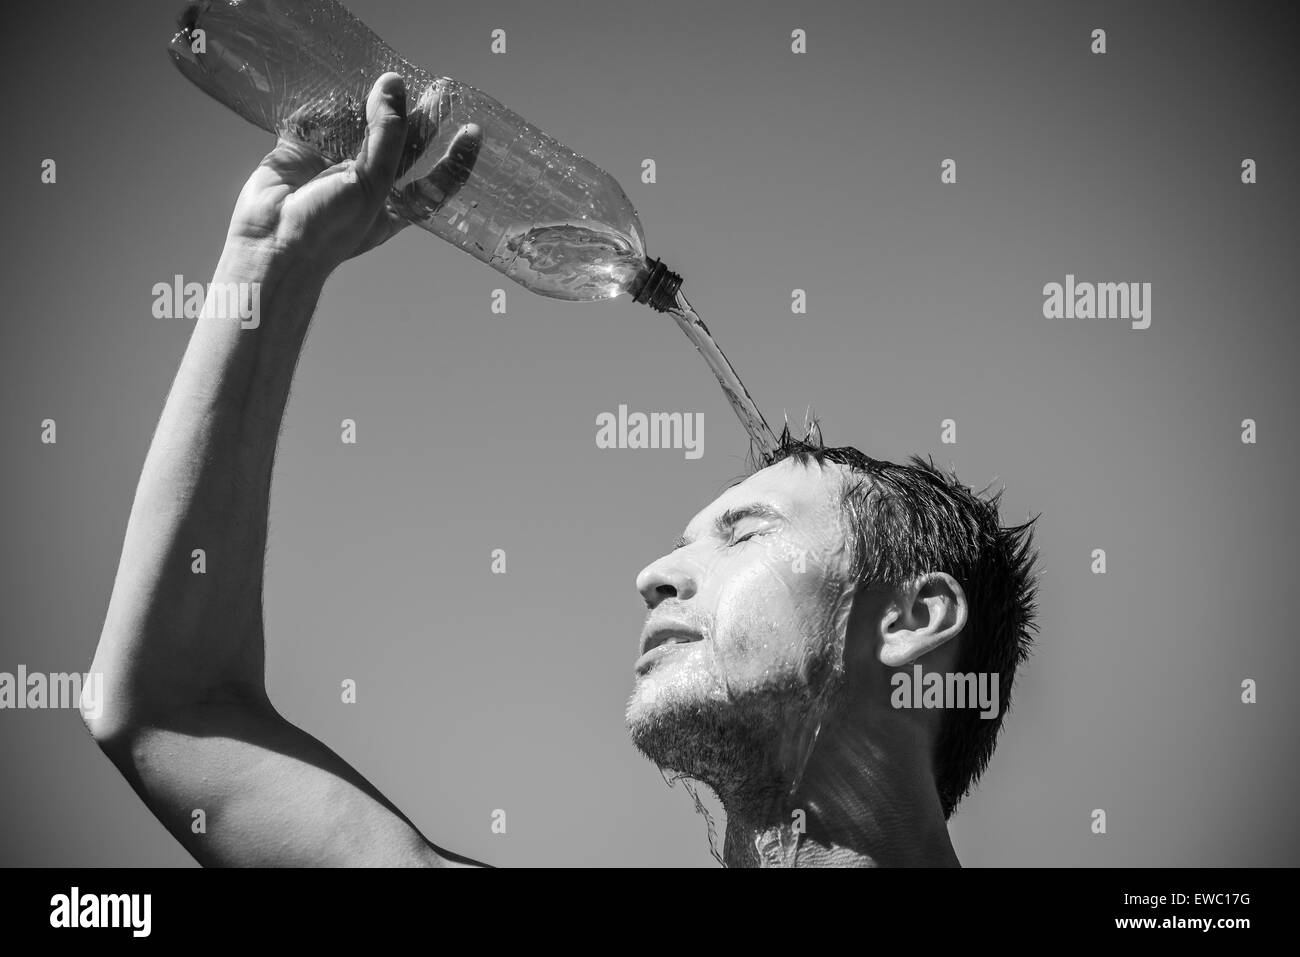 Photo d'un homme qui est couvert le visage avec de l'eau. Beau ciel en arrière-plan. Banque D'Images